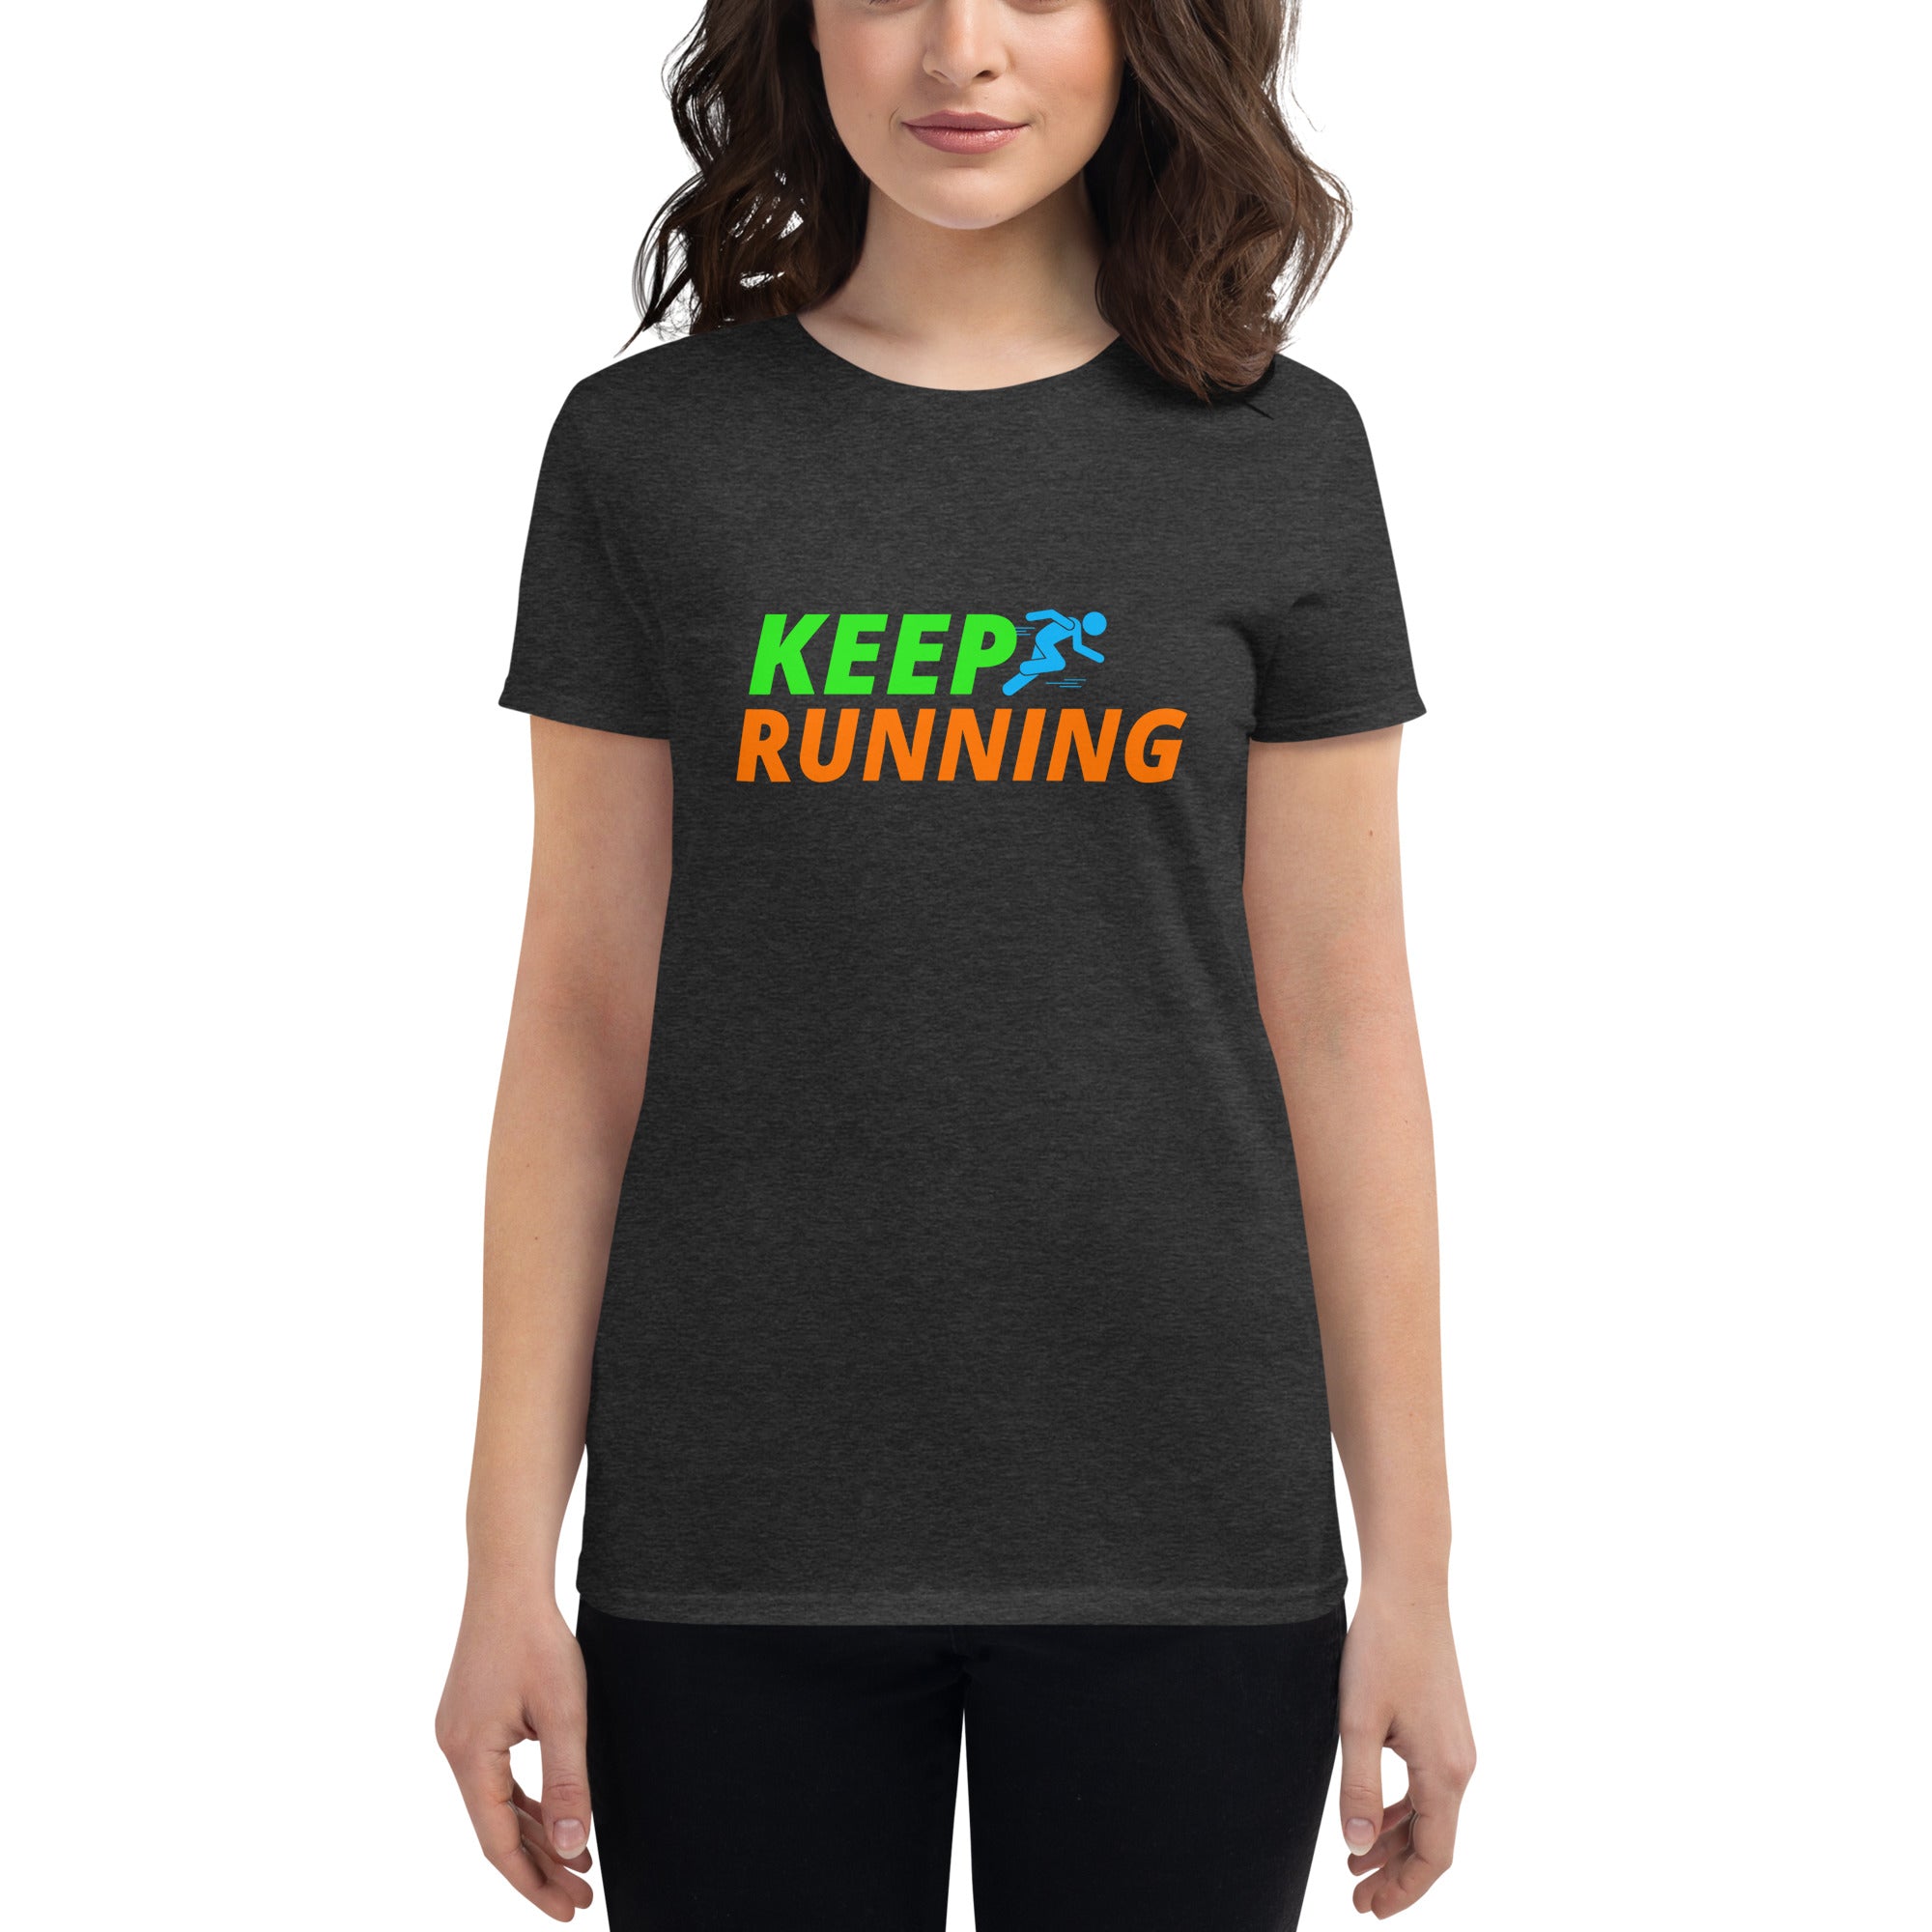 Keep Running Women's Fitted T-Shirt